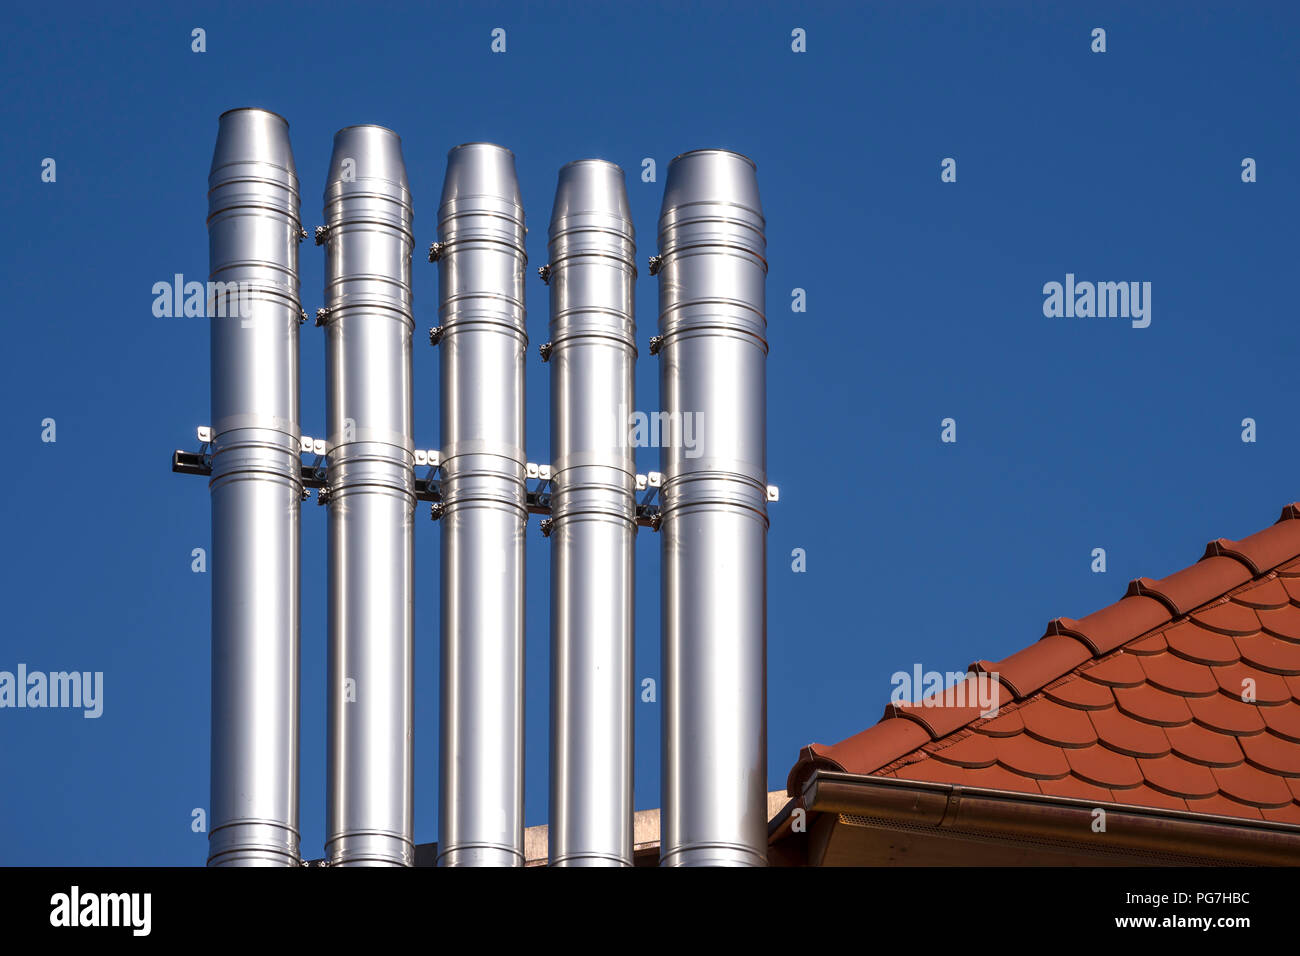 Cinq cheminées métalliques sur le toit Banque D'Images